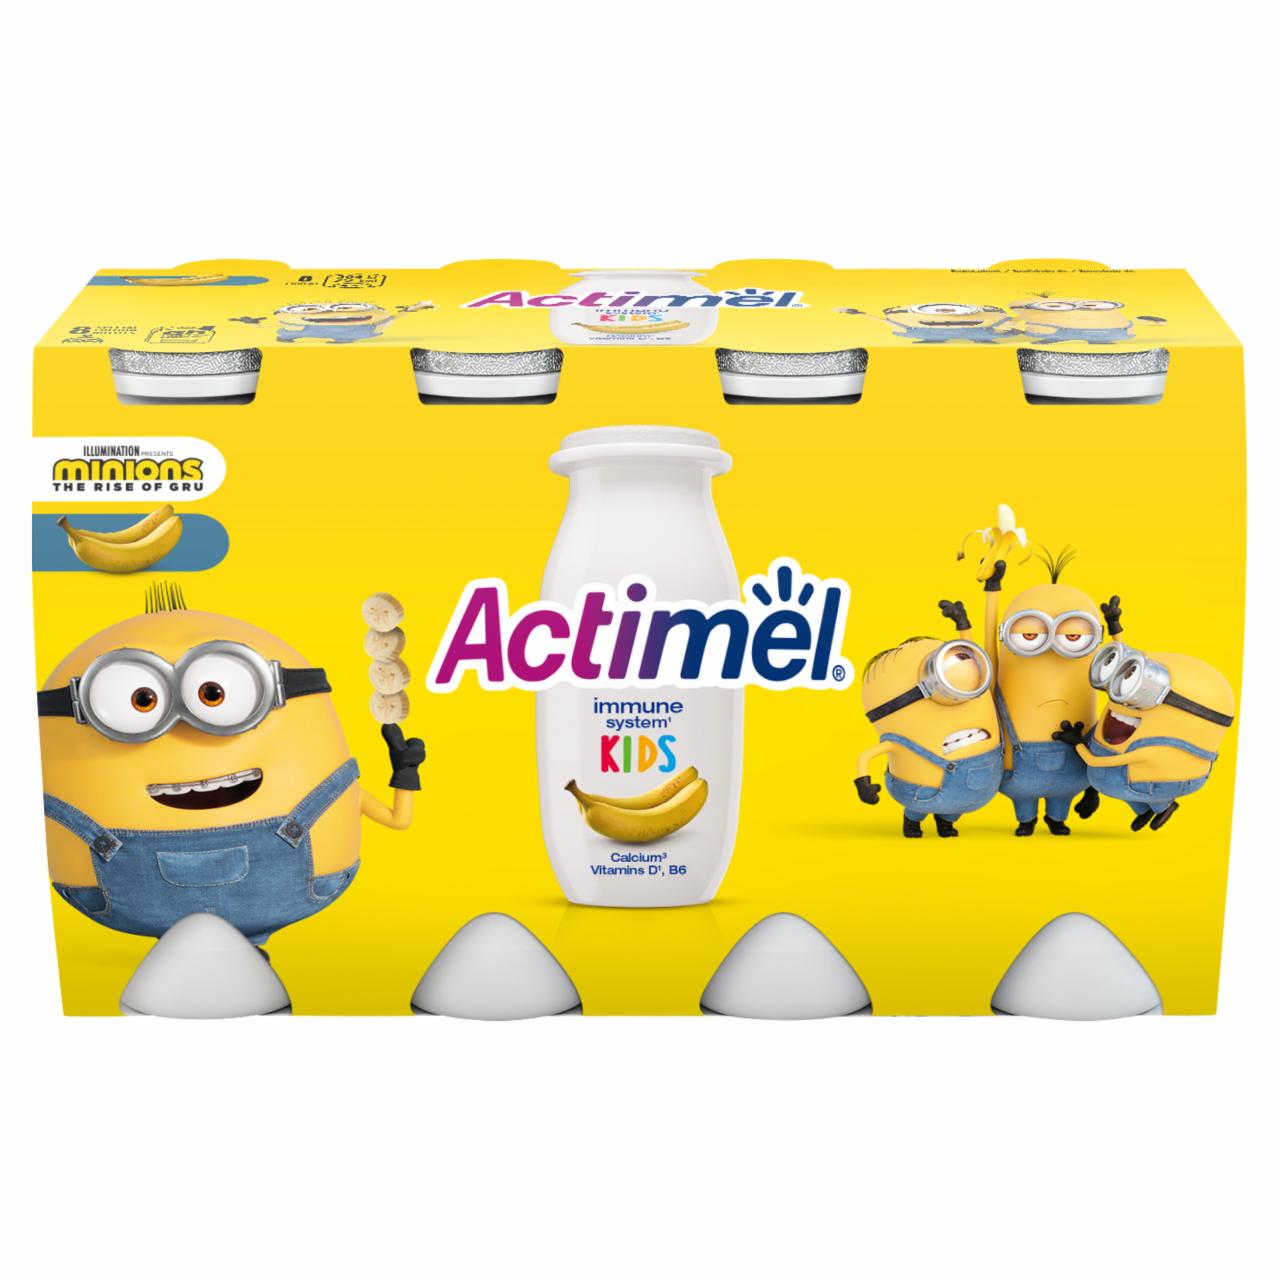 Képek - Danone Actimel Kids zsírszegény, banánízű joghurtital B6- és D-vitaminnal 8 x 100 g (800 g)